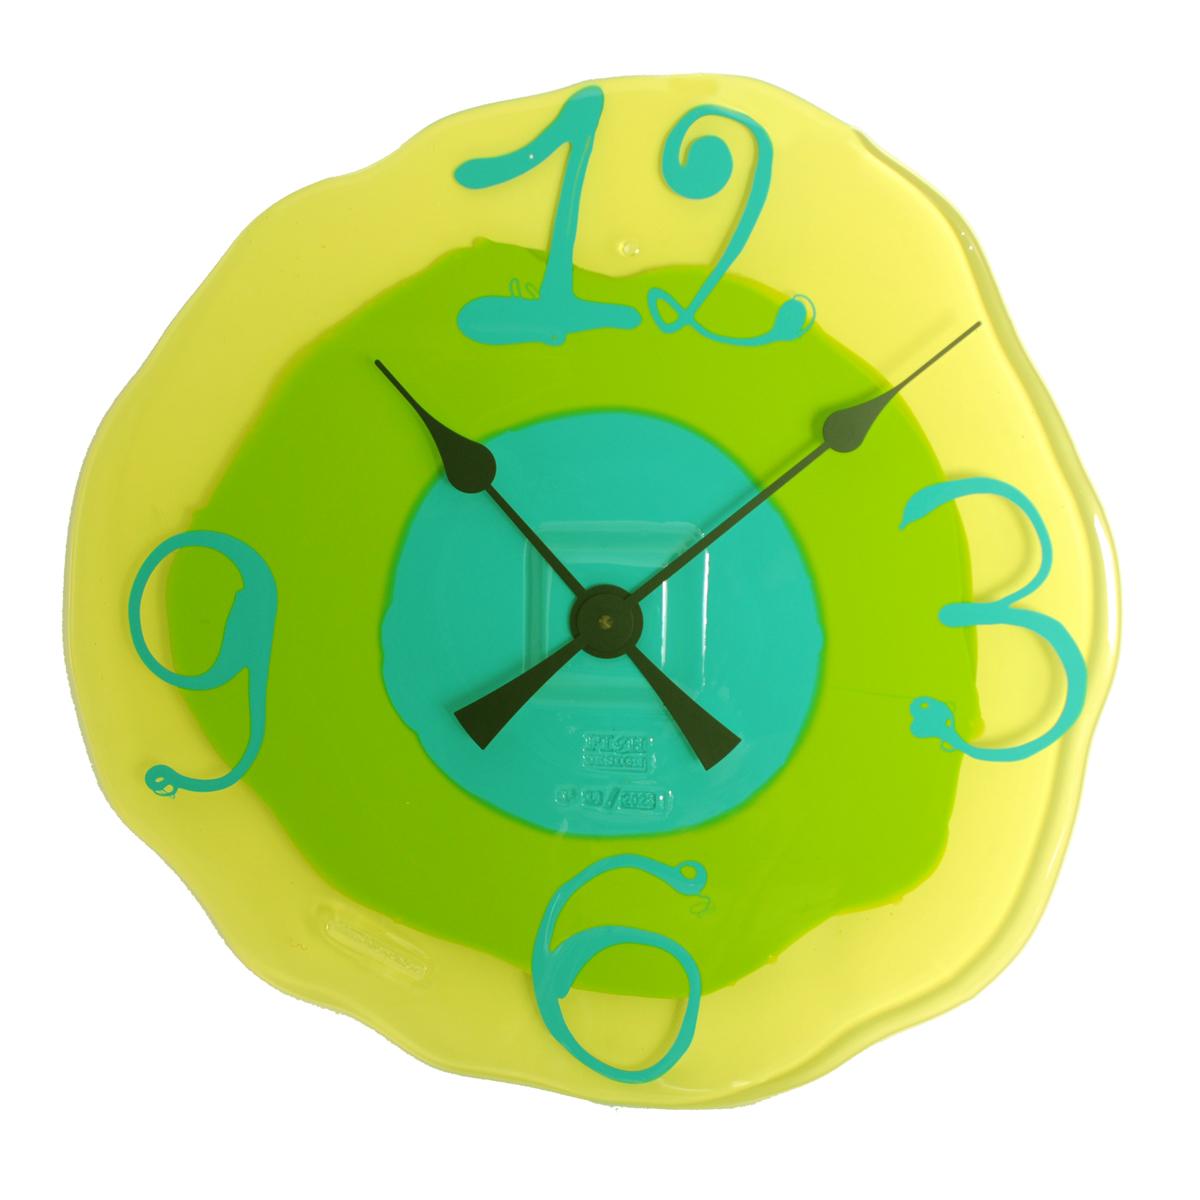 Résine Grande montre Me Clock jaune clair, citron mat et turquoise, de Gaetano Pesce en vente